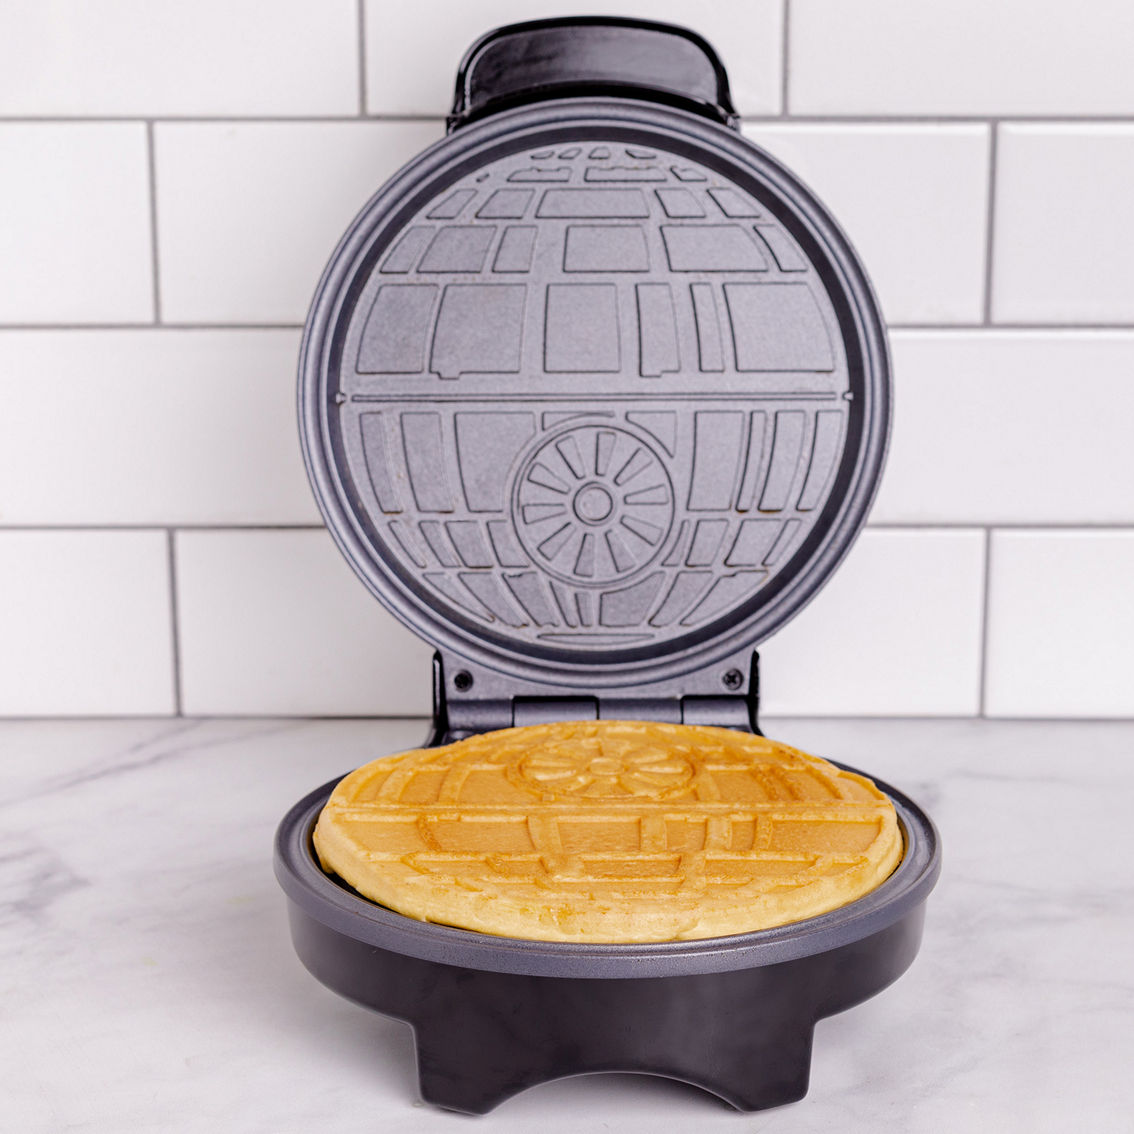 Uncanny Brands Star Wars Halo Death Star Waffle Maker - Image 6 of 10